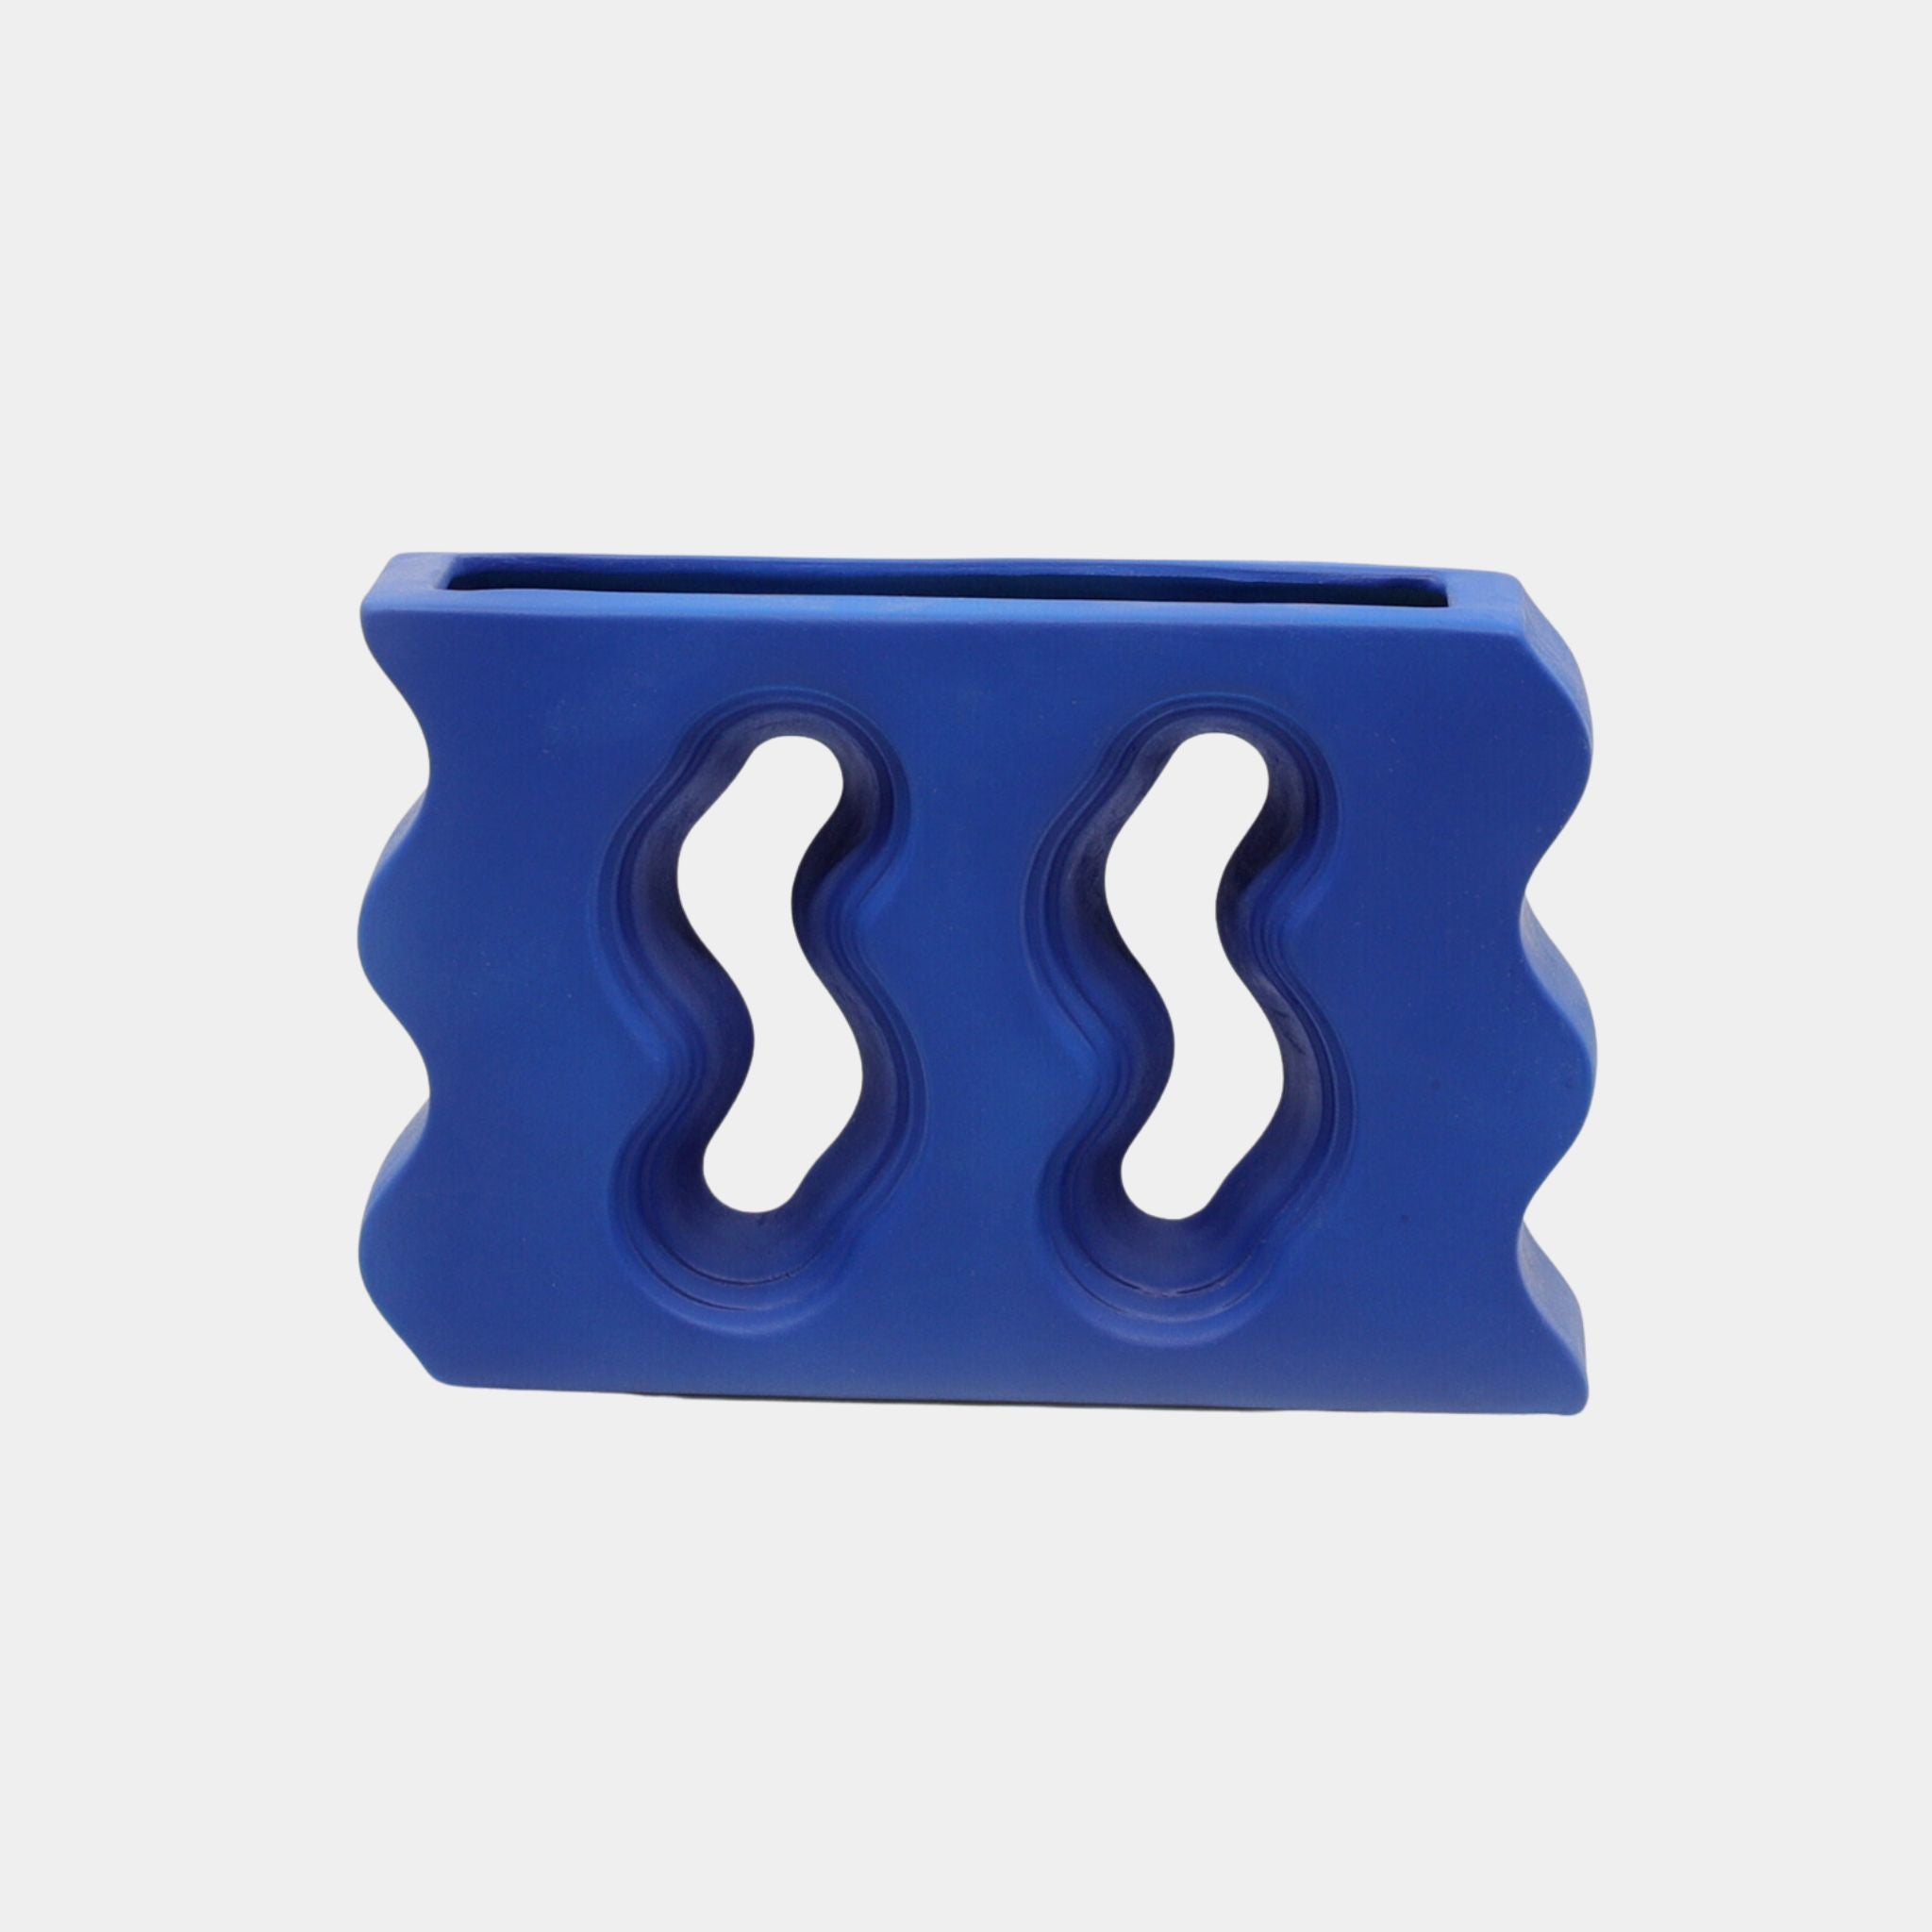 Ceramic Vase | Summertime Series - Blue - The Feelter